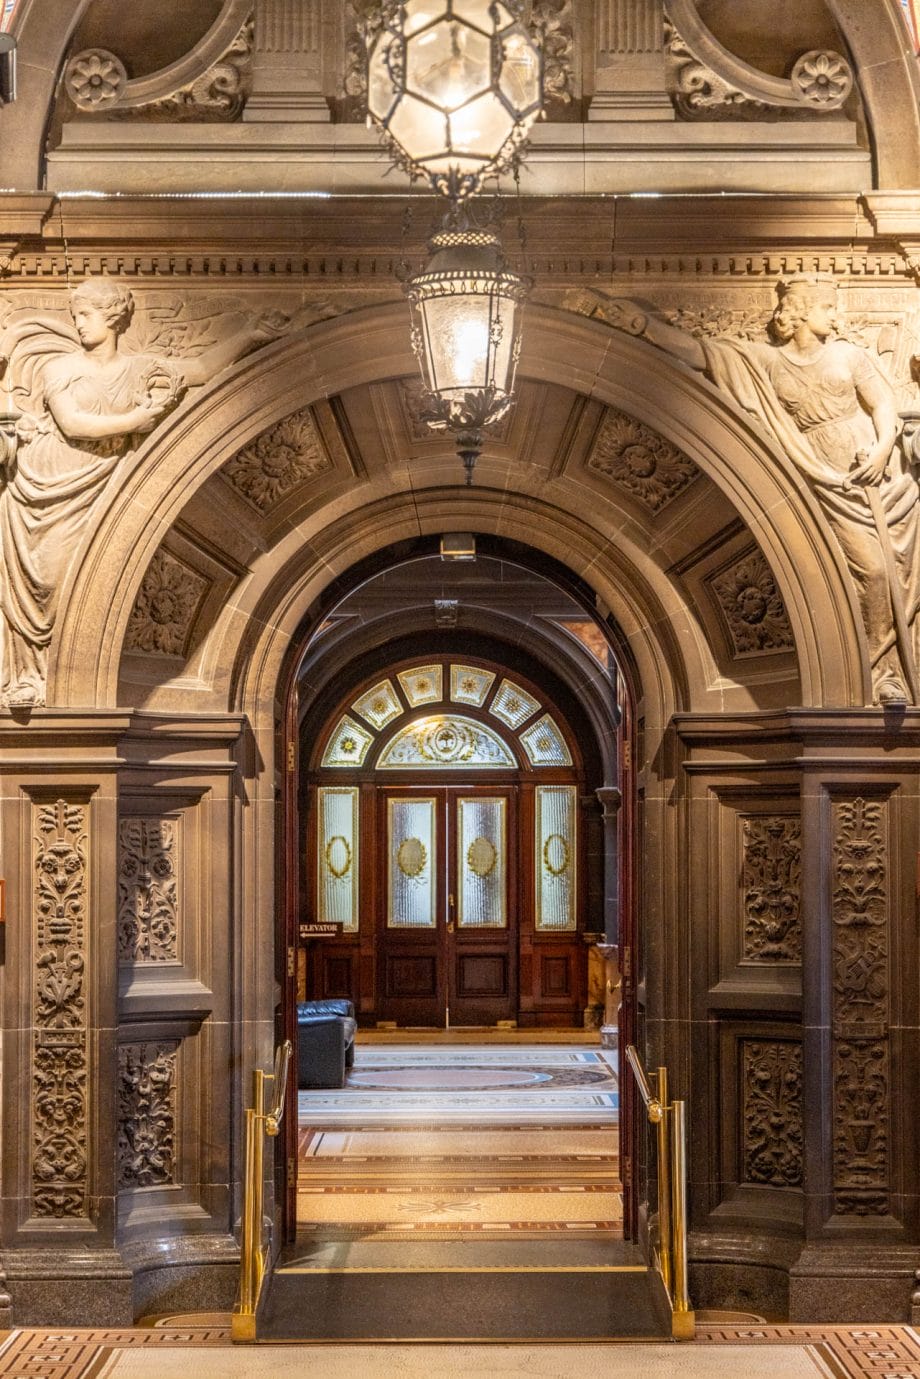 Ein Durchgang im Inneren des Rathauses von Glasgow sieht aus, wie ein römischer Triumphbogen.